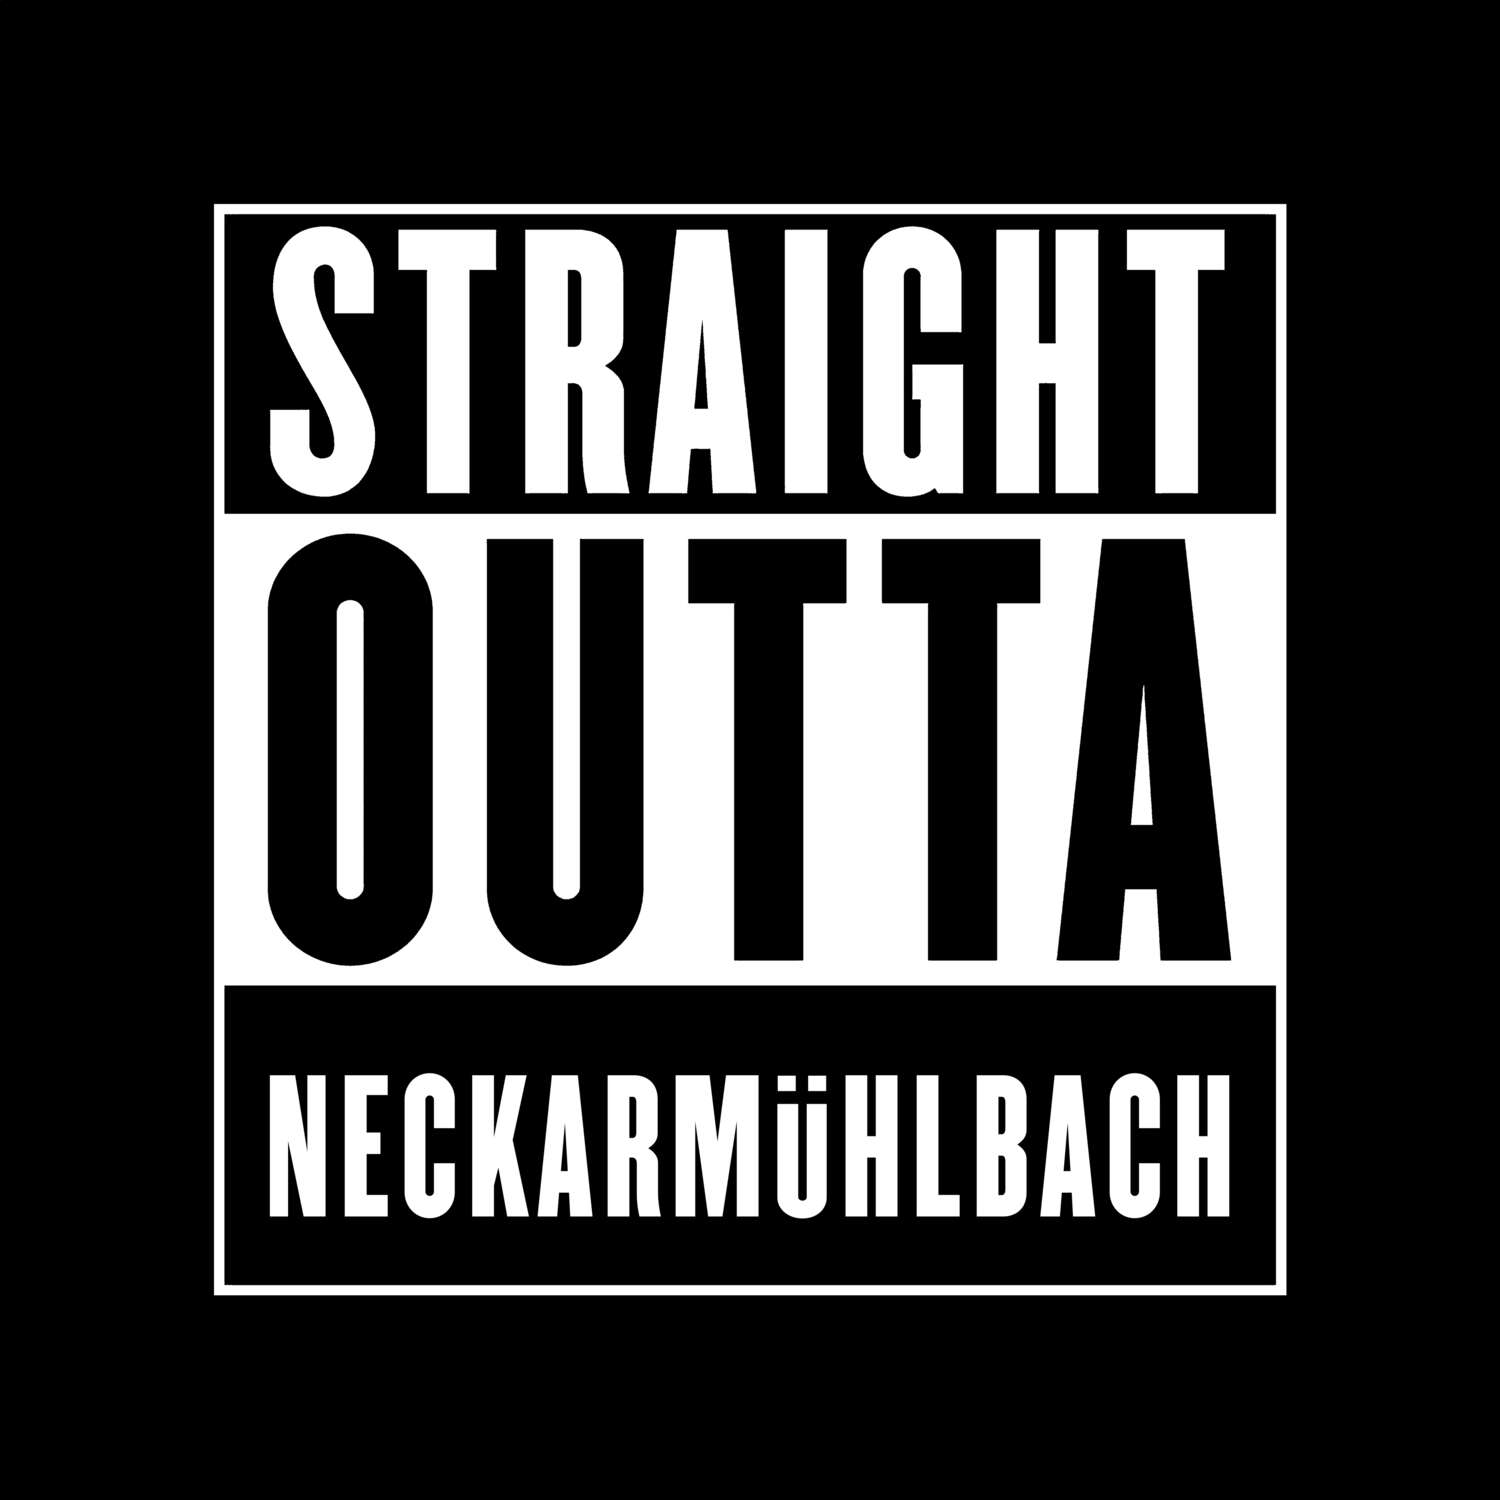 Neckarmühlbach T-Shirt »Straight Outta«